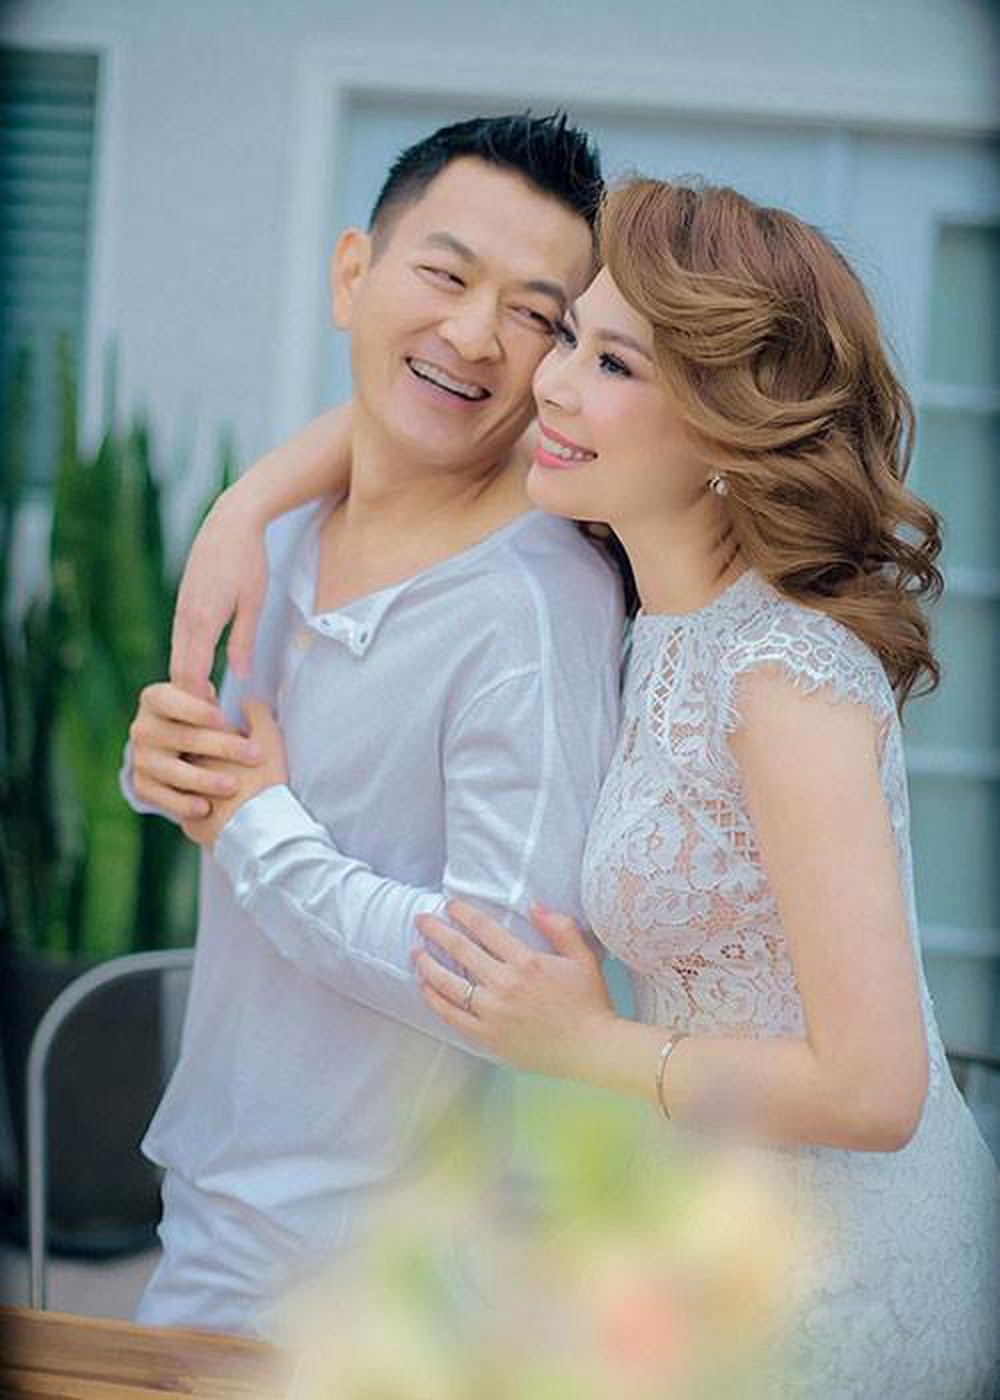 Ca sĩ Thanh Thảo: Đám cưới hụt năm 28 tuổi và hạnh phúc muộn với bác sĩ Việt kiều - Ảnh 3.